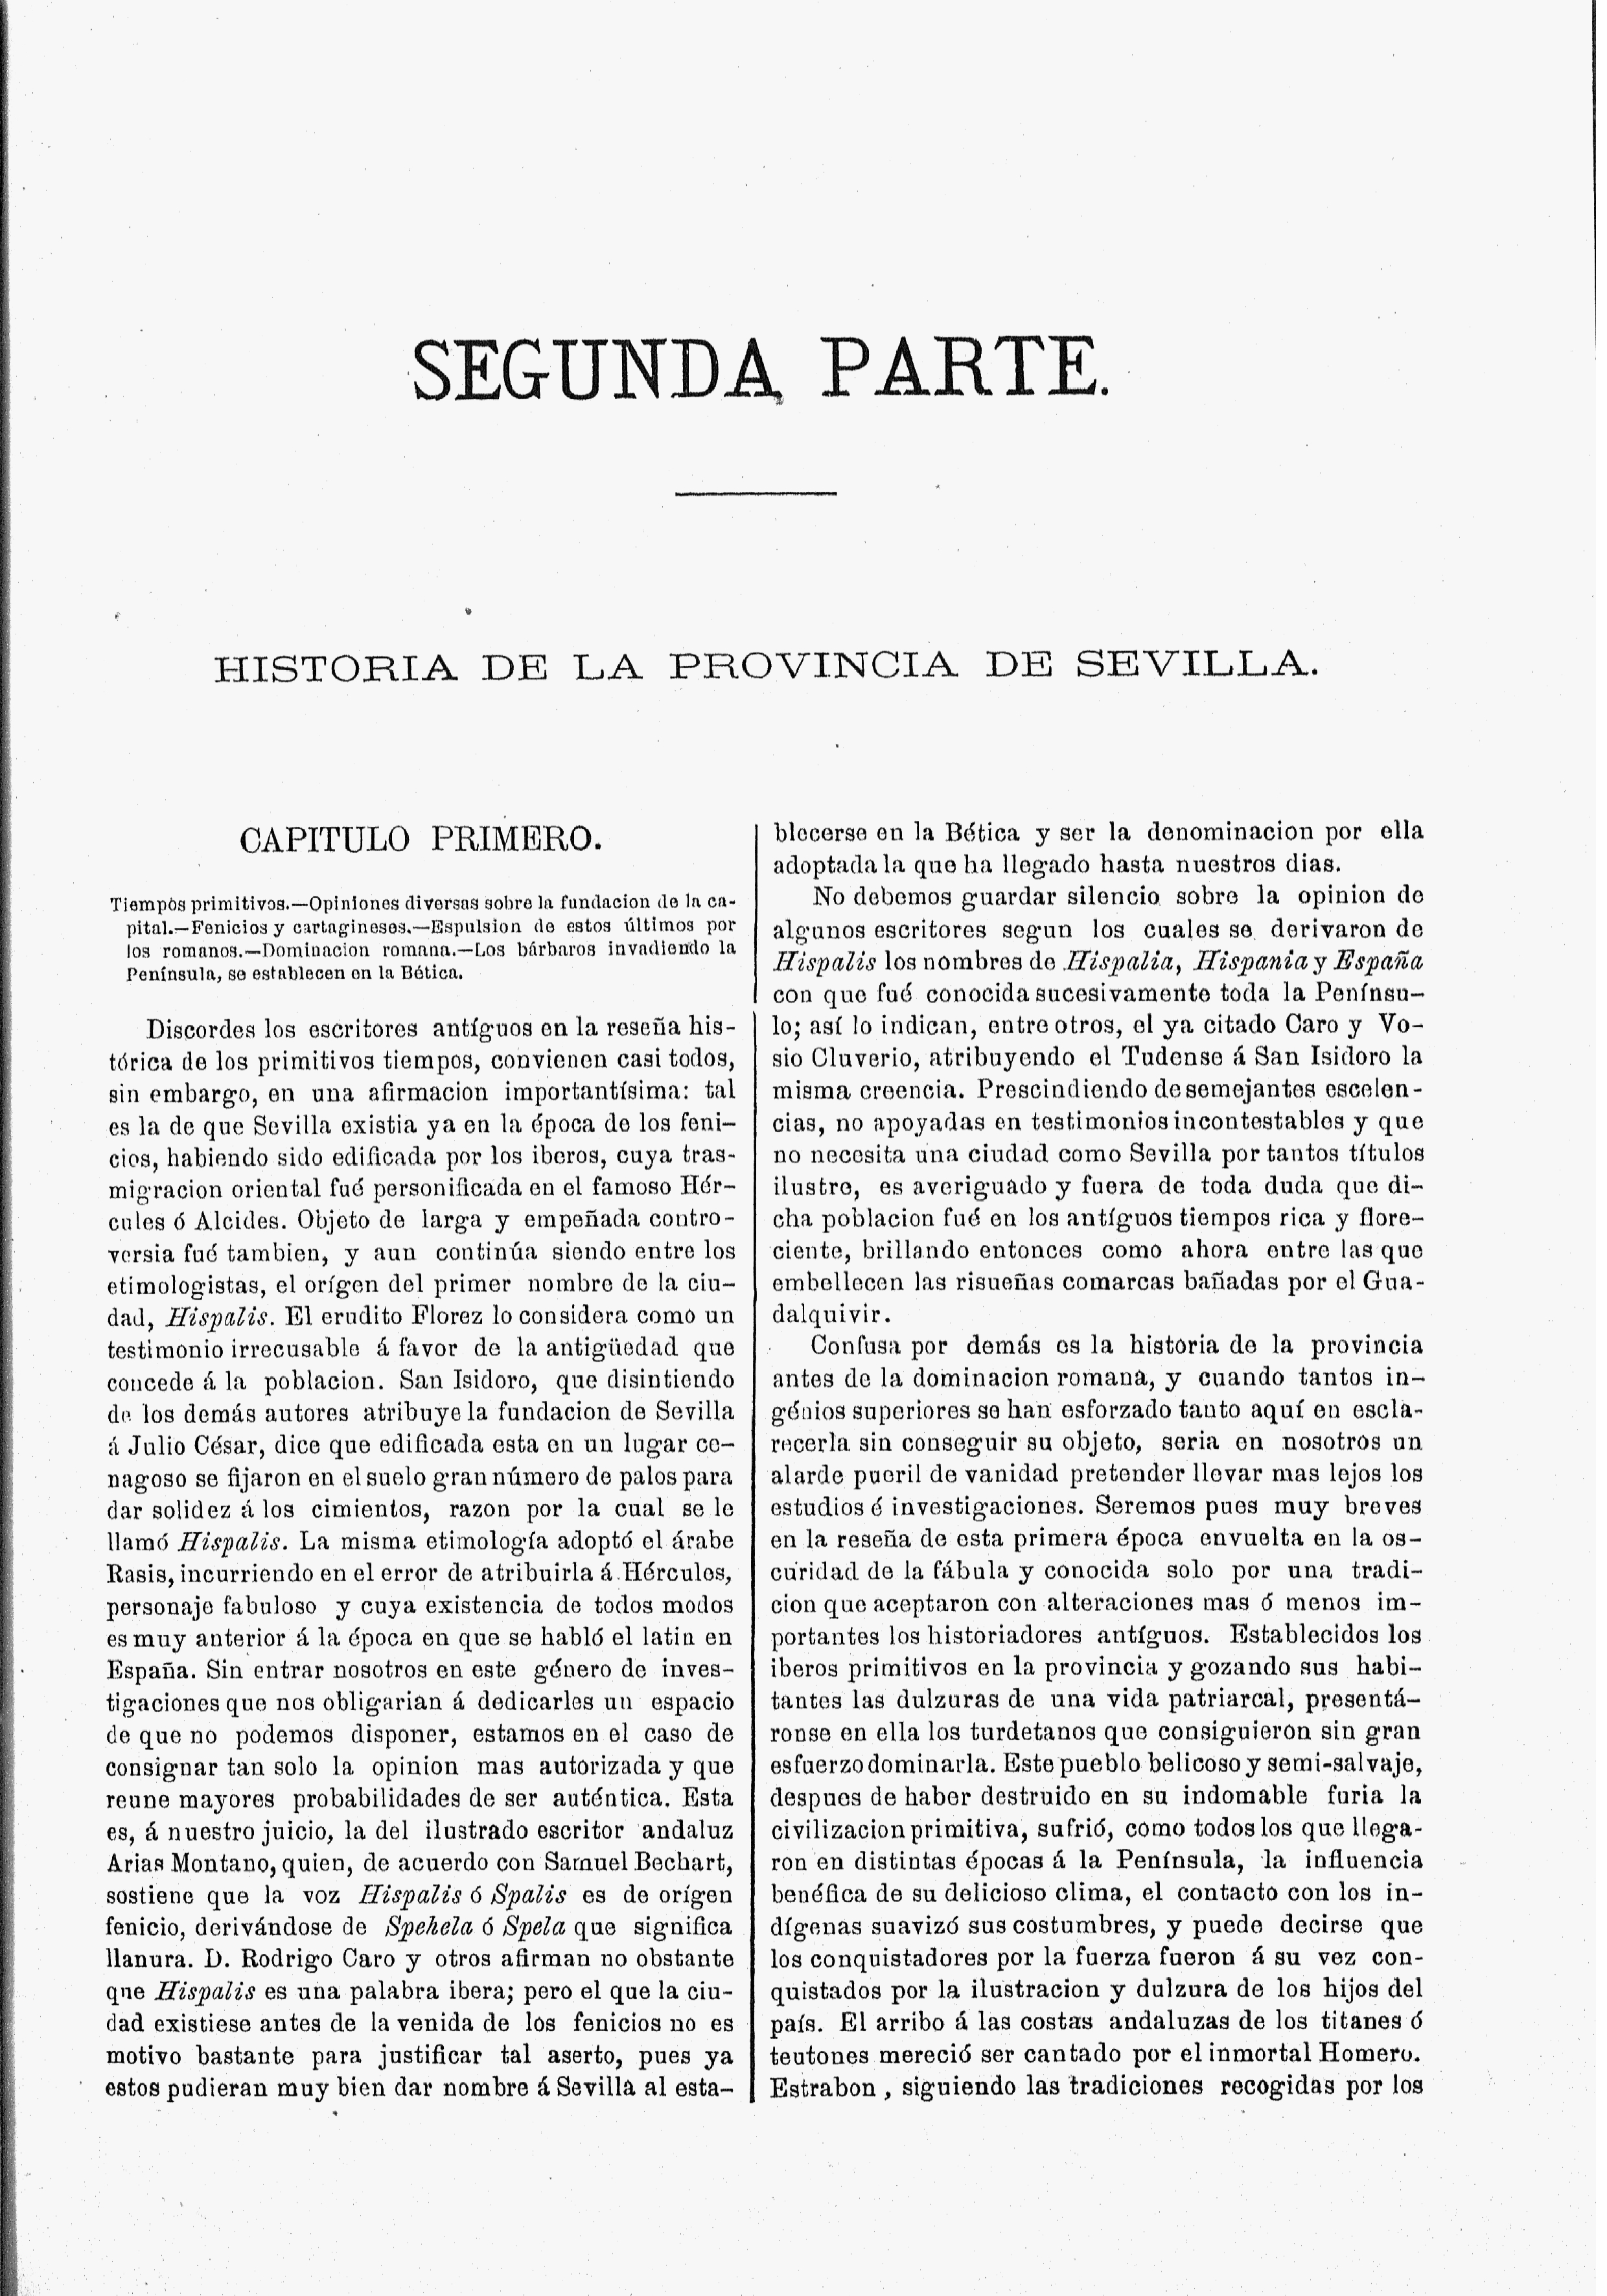 Segunda parte. Historia de la provincia de Sevilla. Capítulo primero